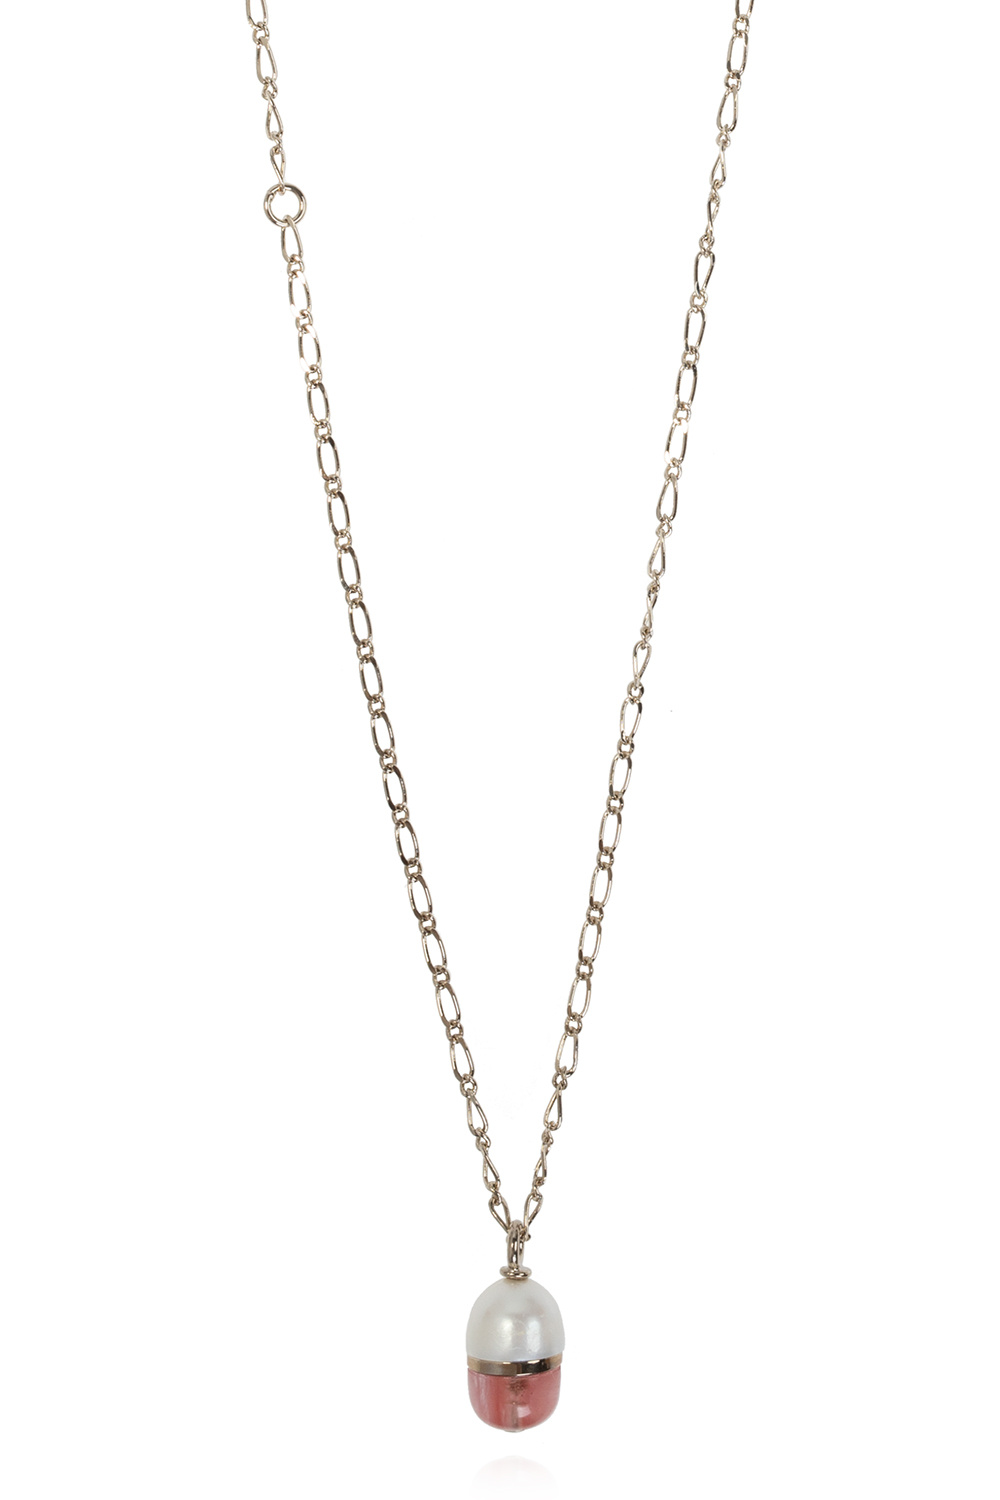 Chloé ‘Darcey’ pearl necklace